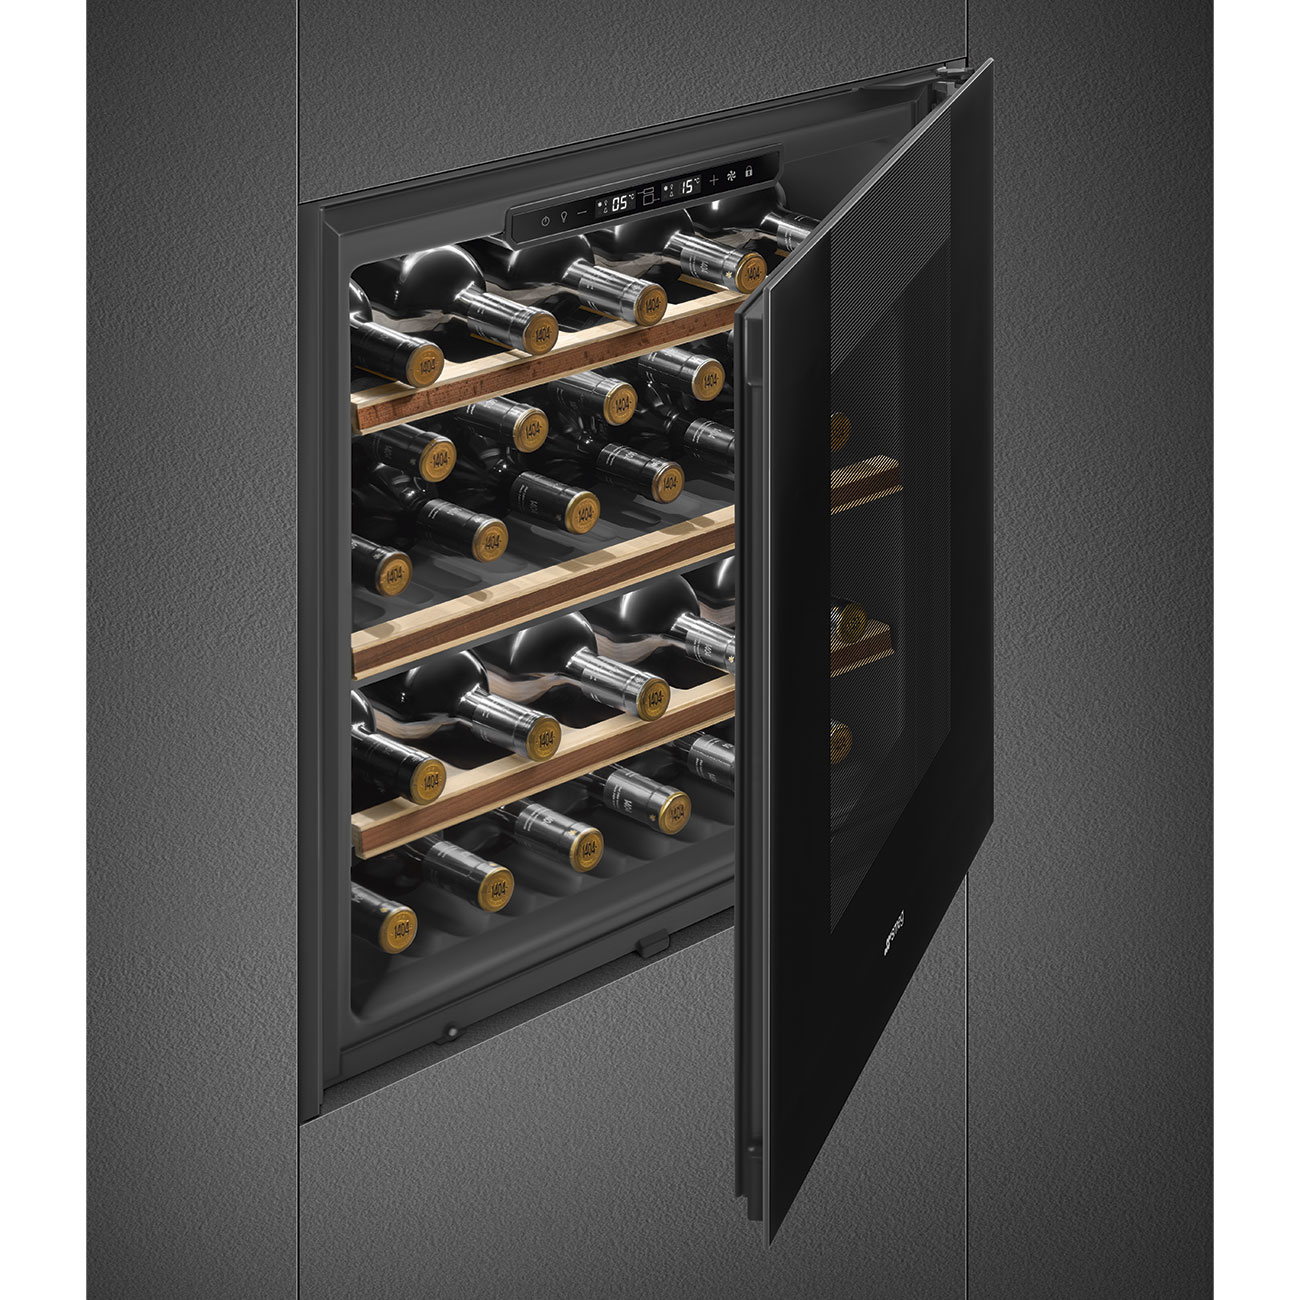 Built-in Wine Cooler Smeg_4